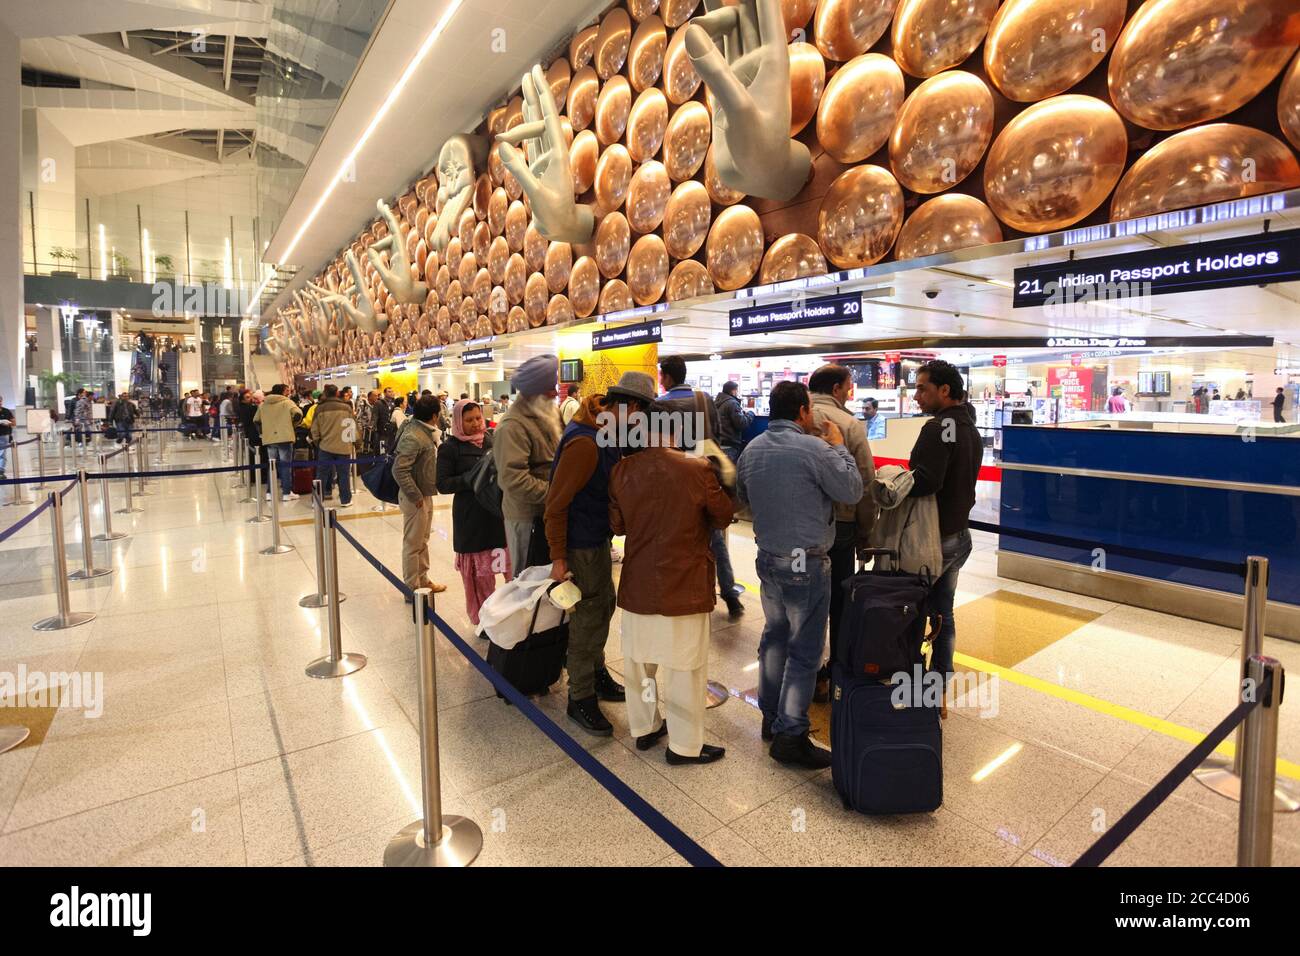 NEW DELHI, INDIEN - 12. FEBRUAR 2014: Einwanderungsgebiet am internationalen Flughafen Indira Gandhi in Neu Delhi, Indien Stockfoto